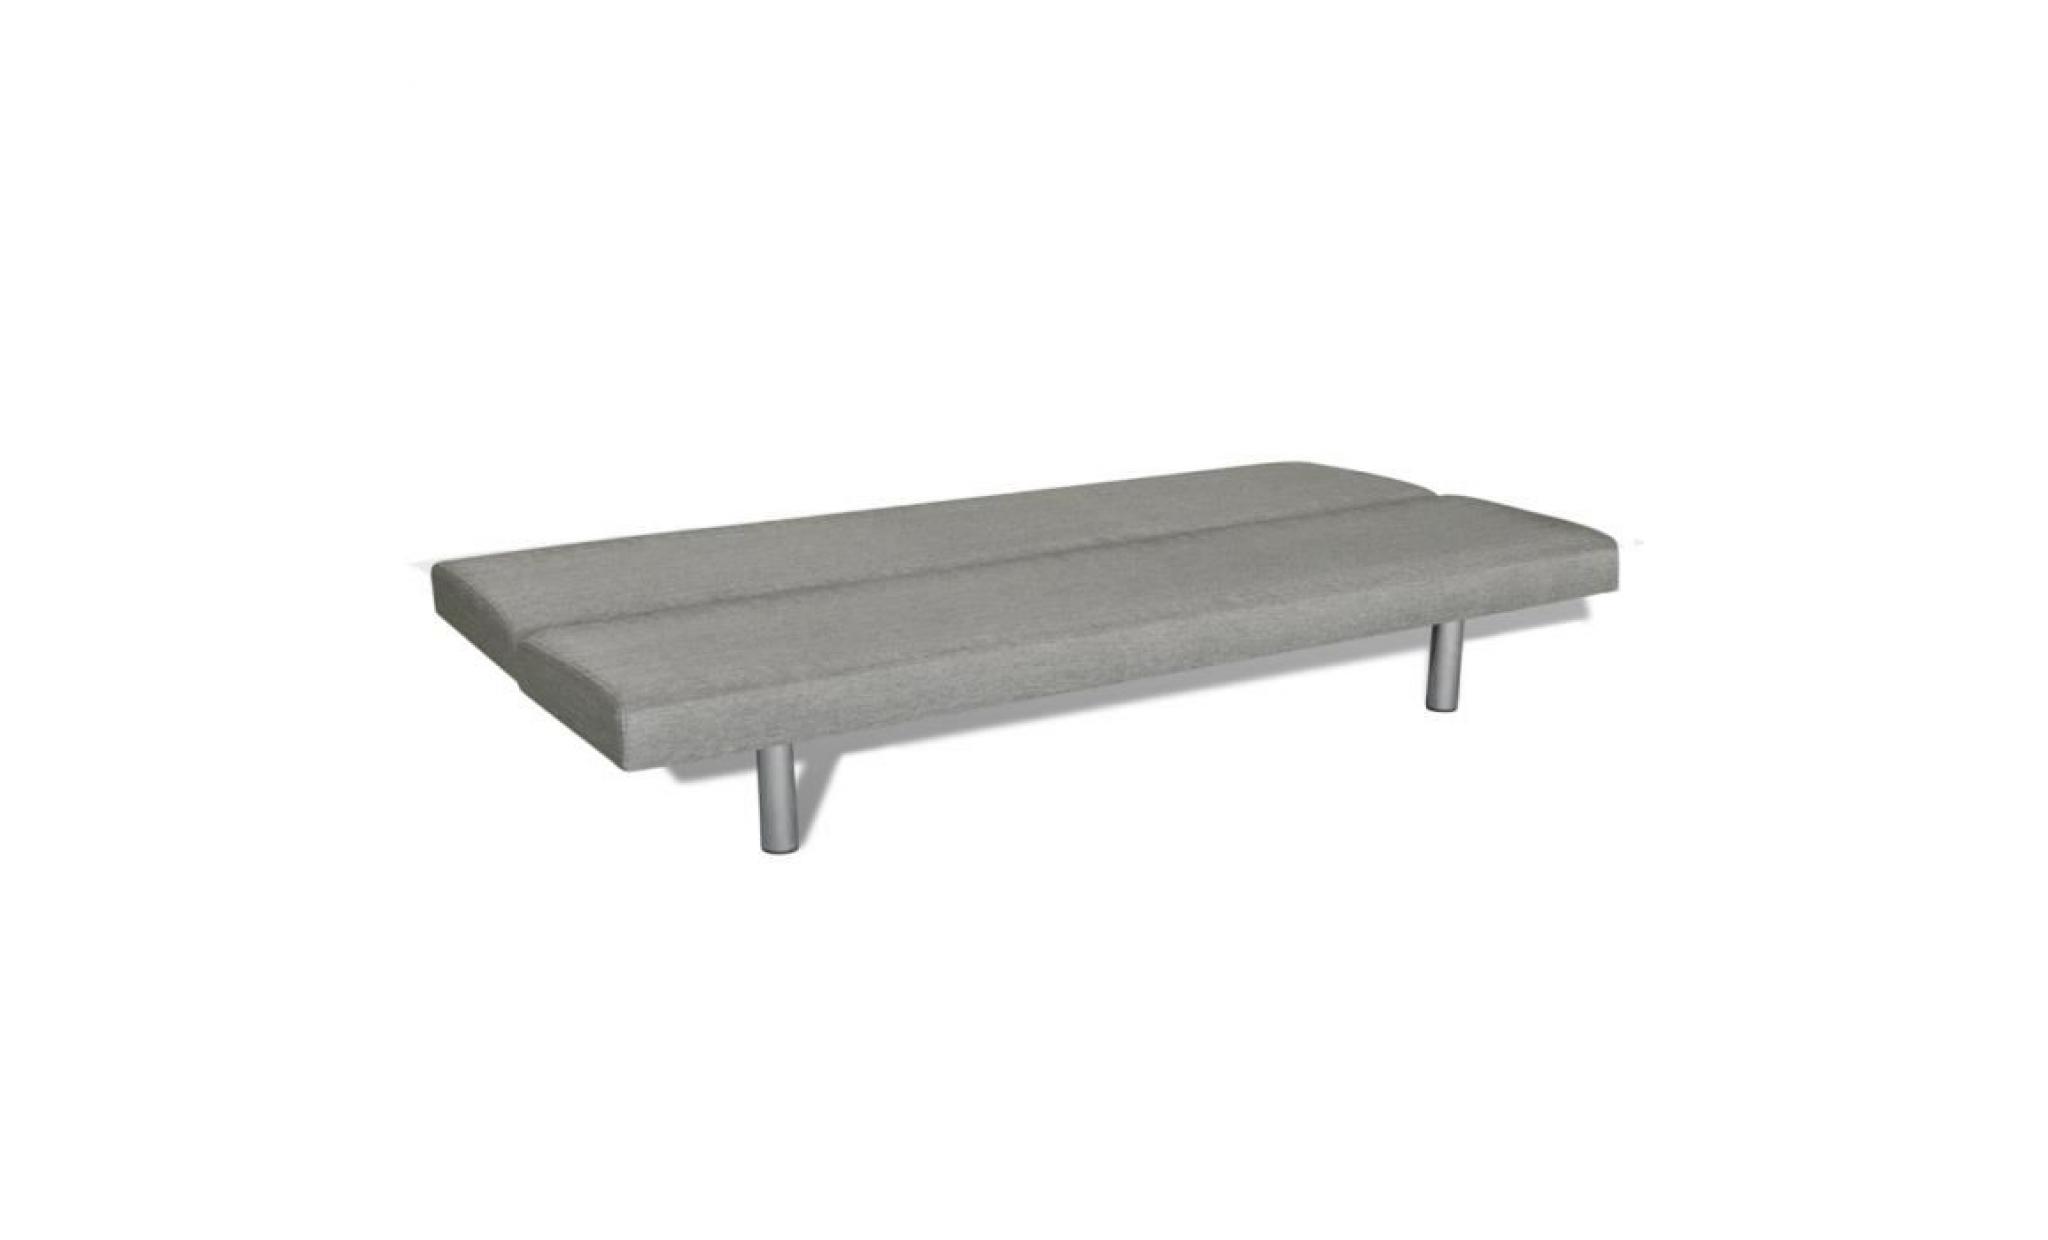 canapé lit inclinable 3 positions clic clac en contreplaqué + tissu pour intérieur maison gris foncé pas cher